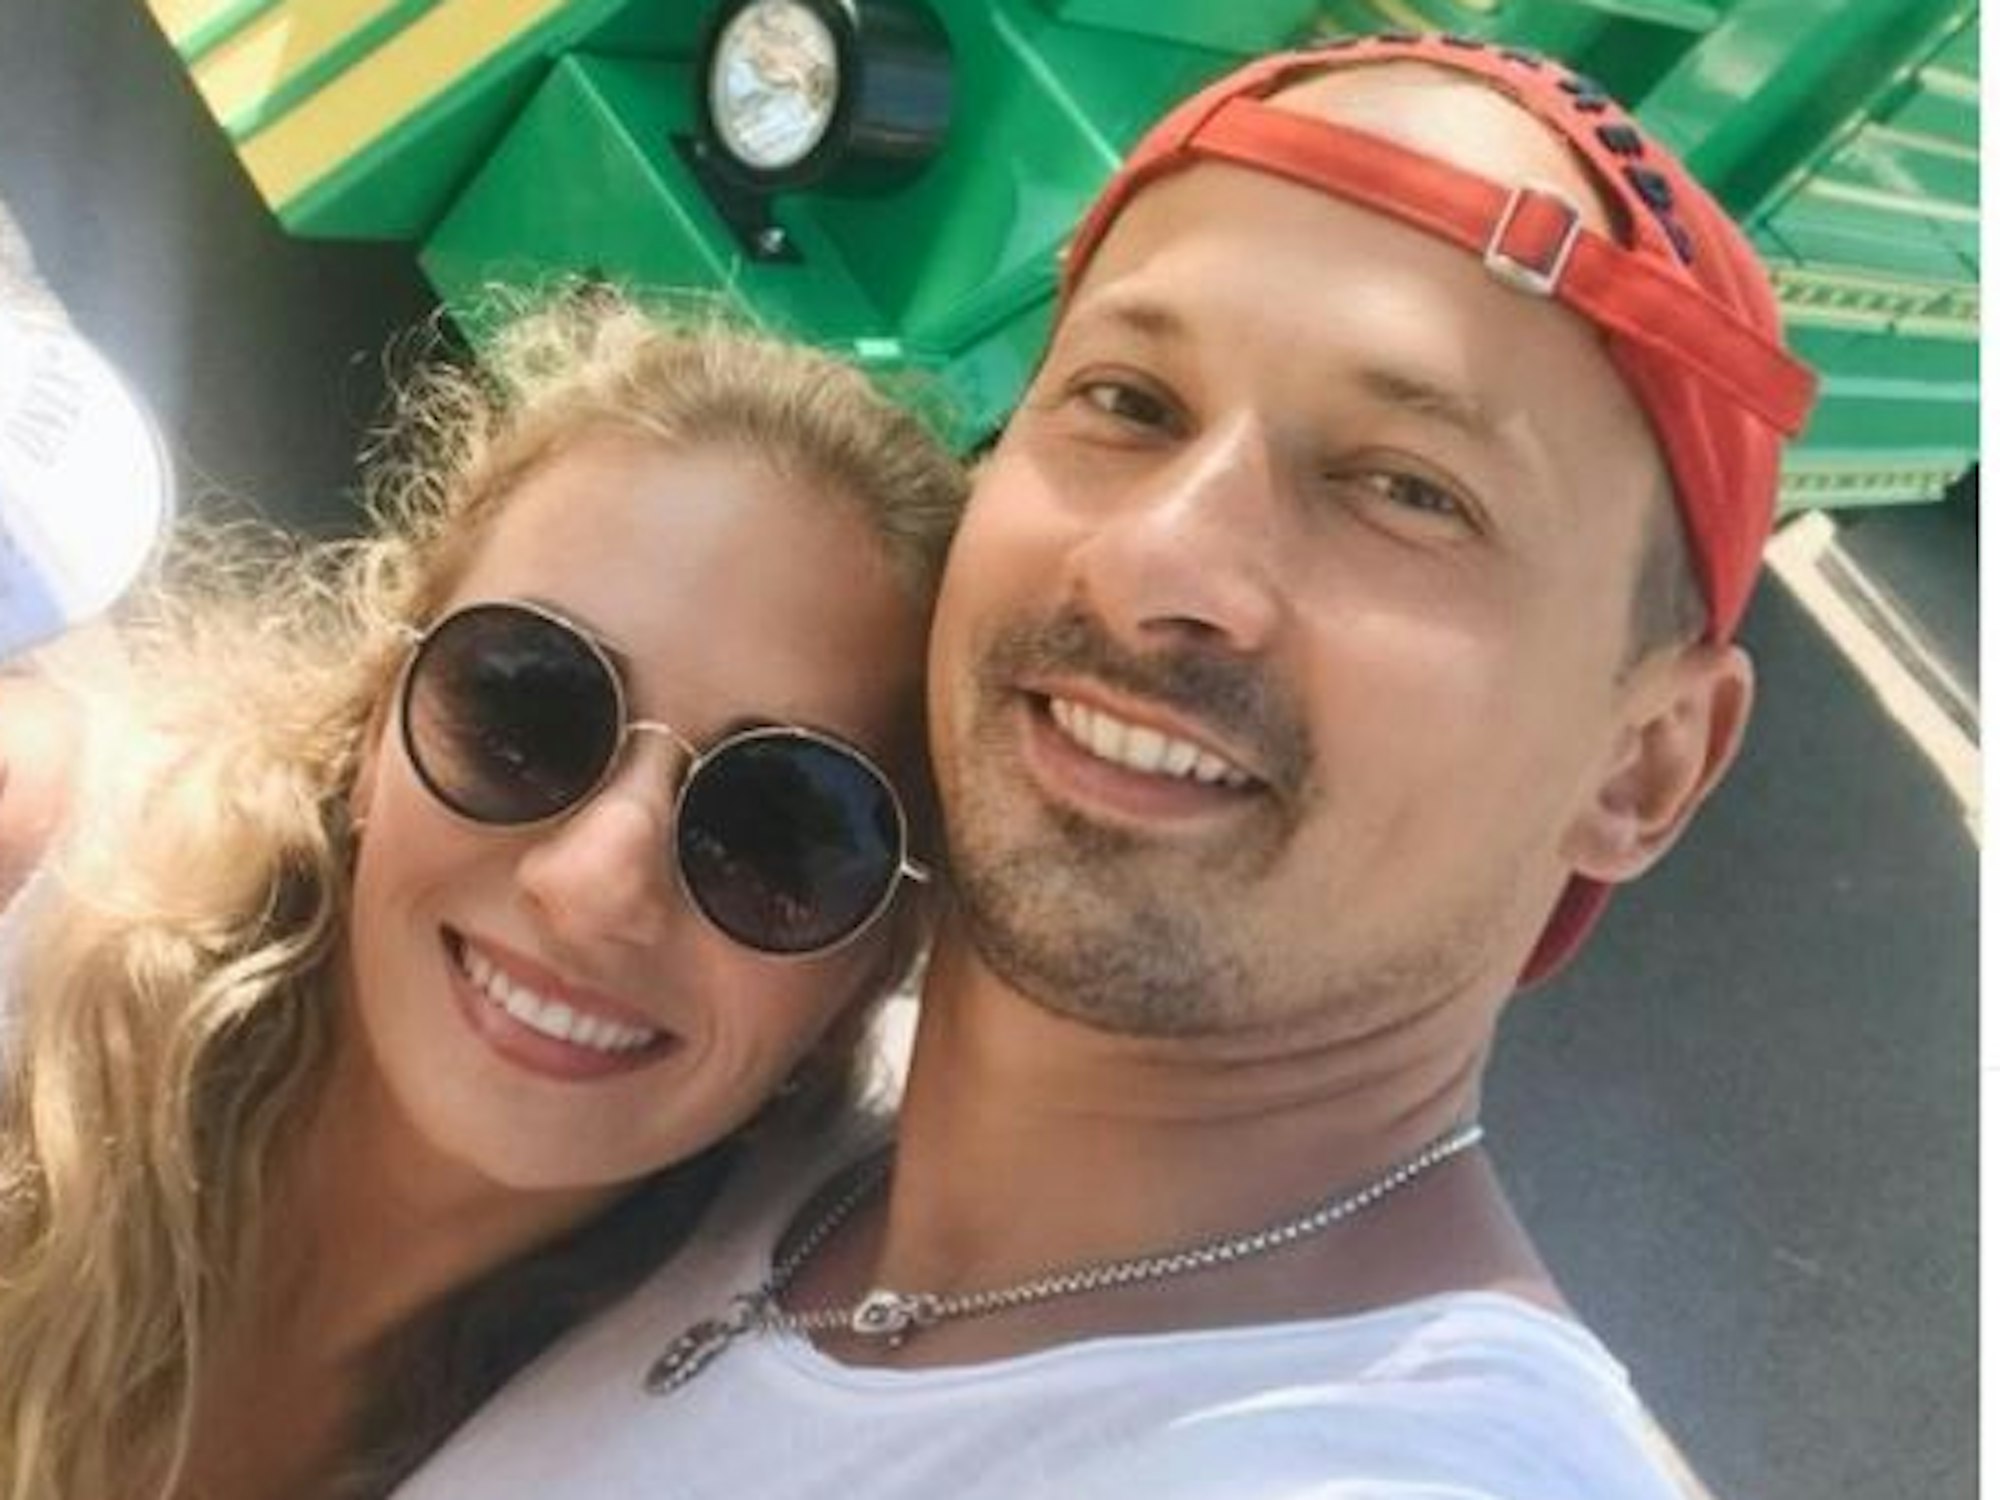 Das Selfie zeigt die Let's Dance-Stars Regina (m.) und Sergiu Luca (r.) mit ihrem gemeinsamen Sohn Lenn (l.). Regina Luca hat das Selfie am 13. Mai 2021 auf Instagram veröffentlicht.